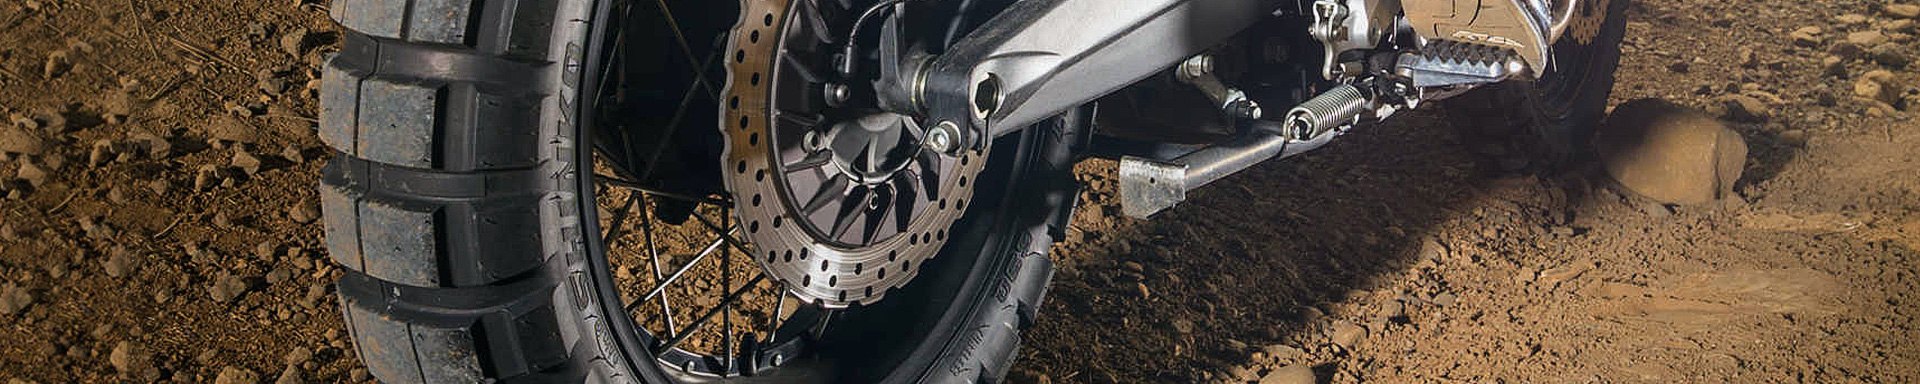 Universal Shinko Motorcycle Tires